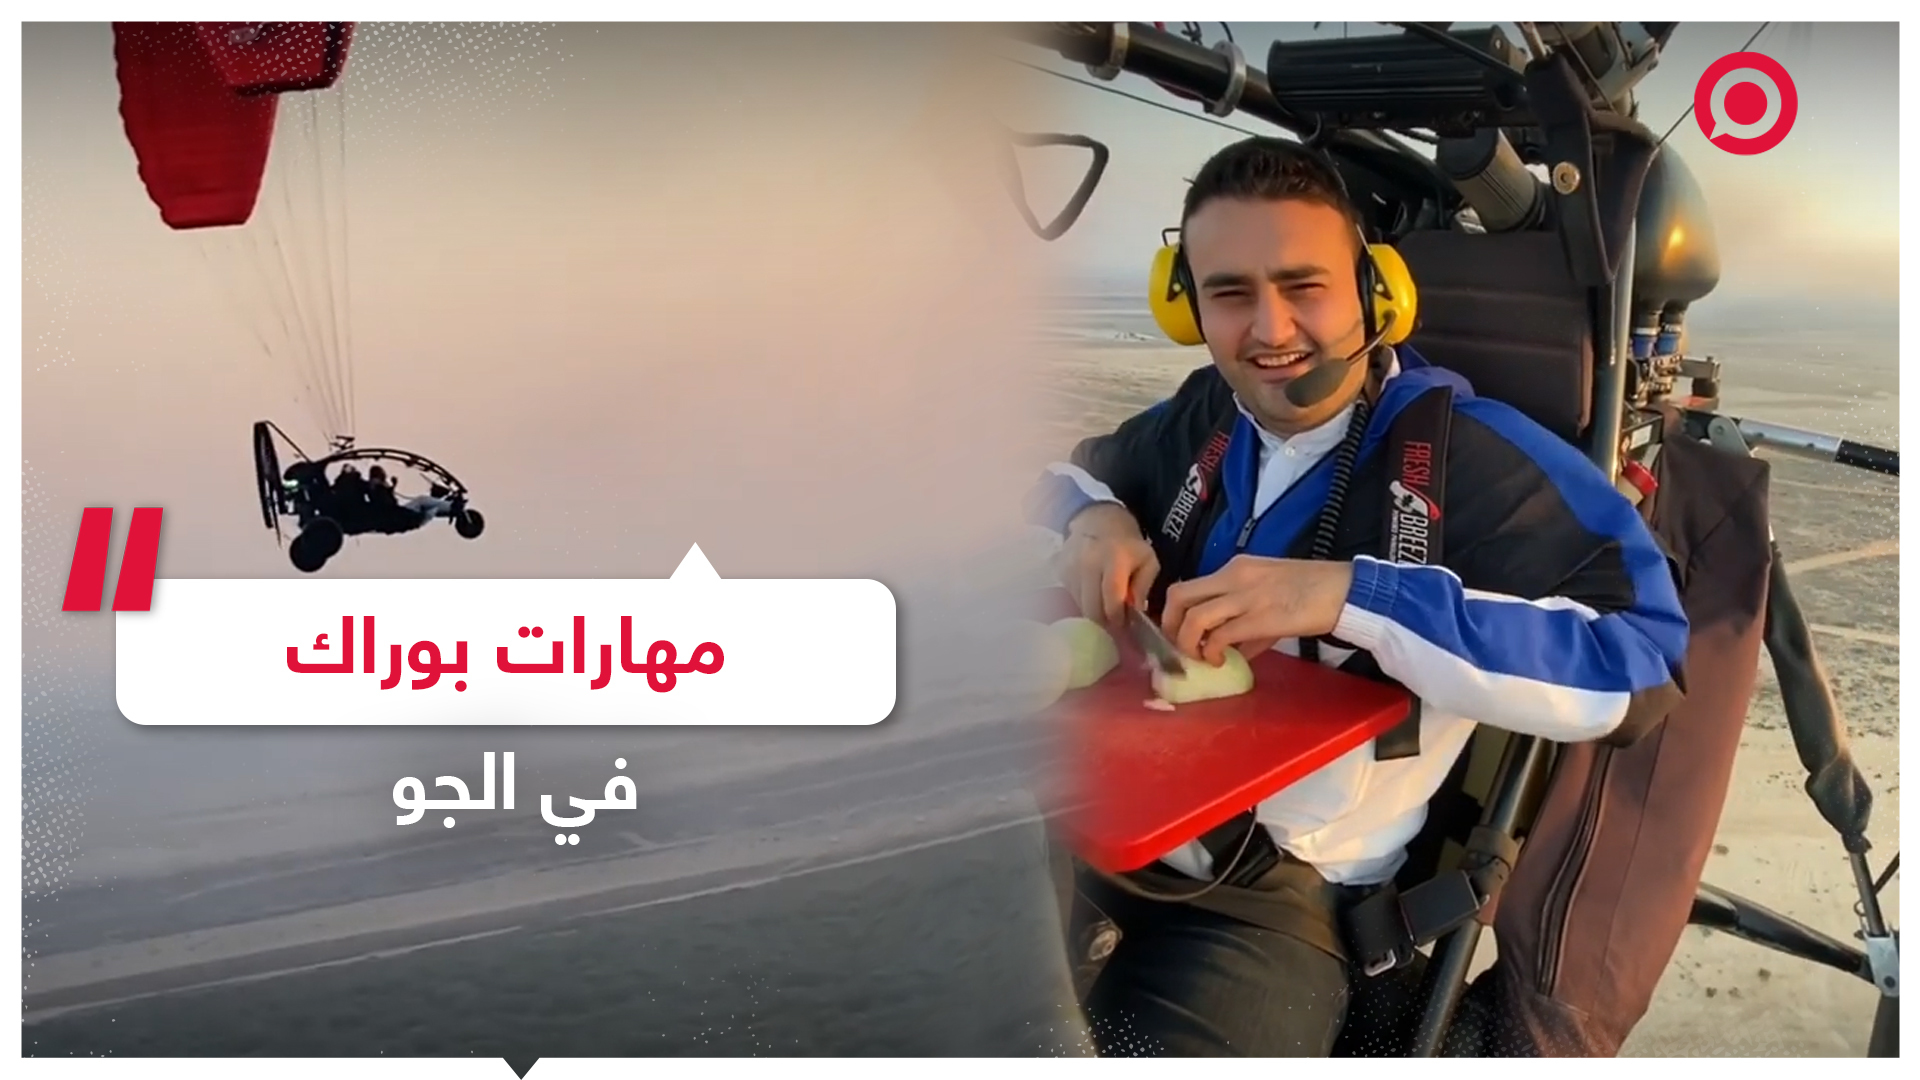 الشيف بوراك يستعرض مهاراته في سماء دبي